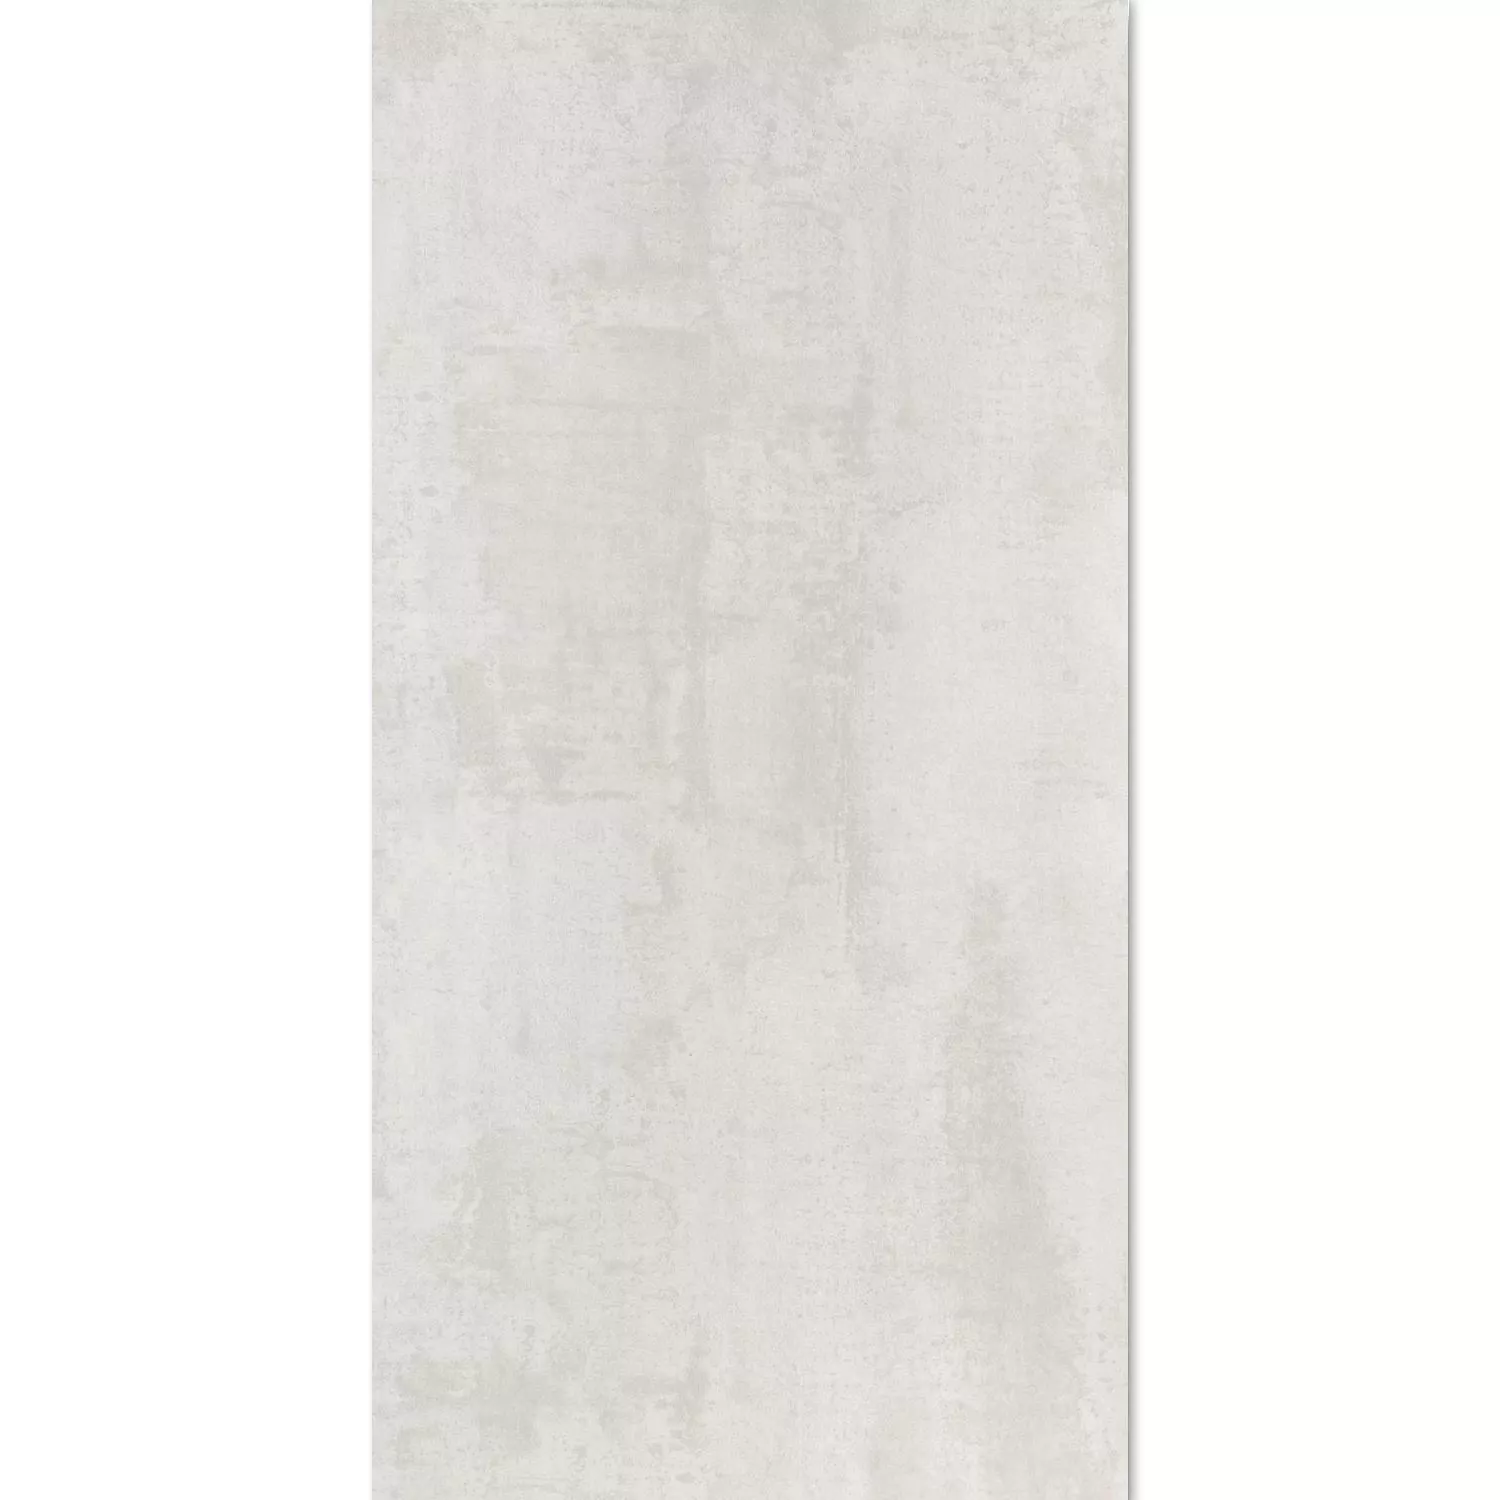 Gulvfliser Herion Metall Utseende Lappato Blanco 45x90cm